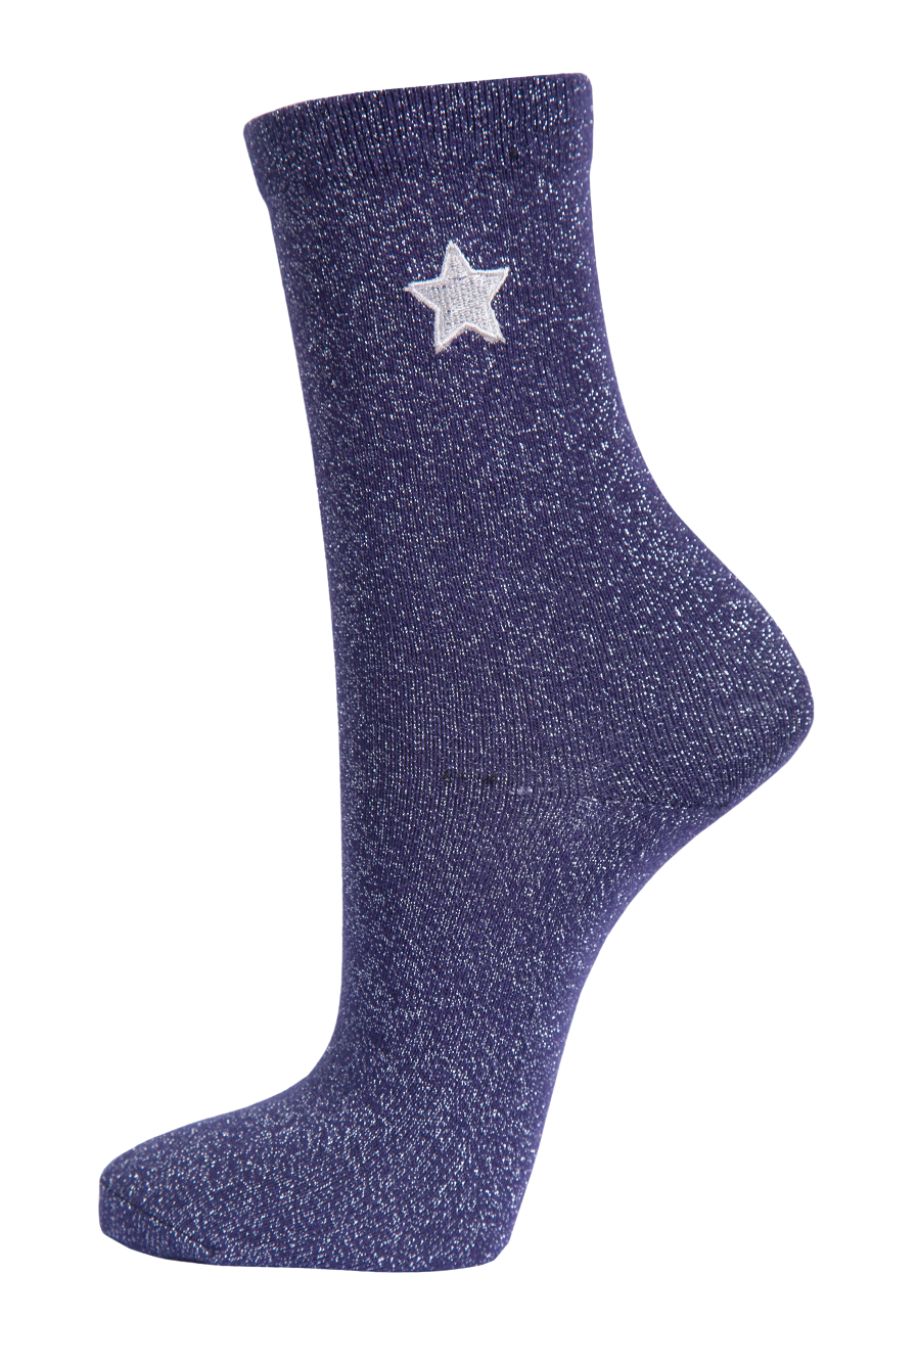 Womens Glitter Socks Embroidered Star Ankle Socks Sparkle Shimmer Navy Blue